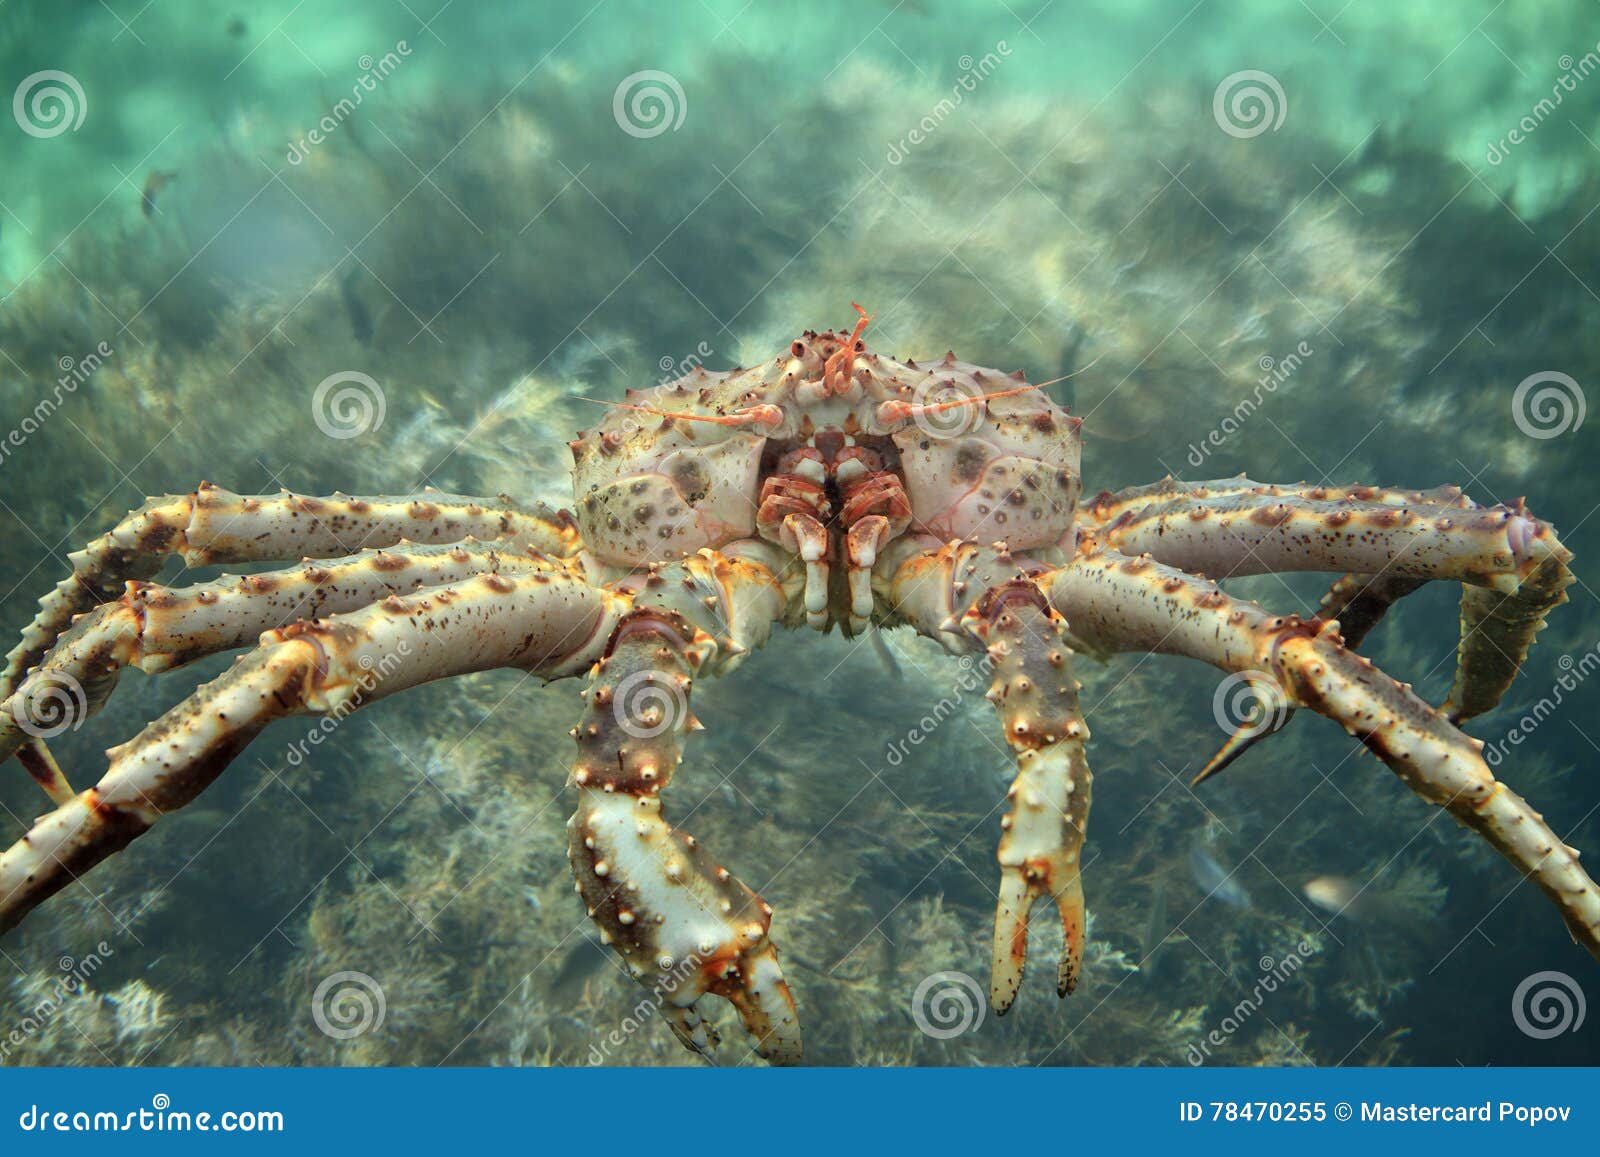 king crab close up